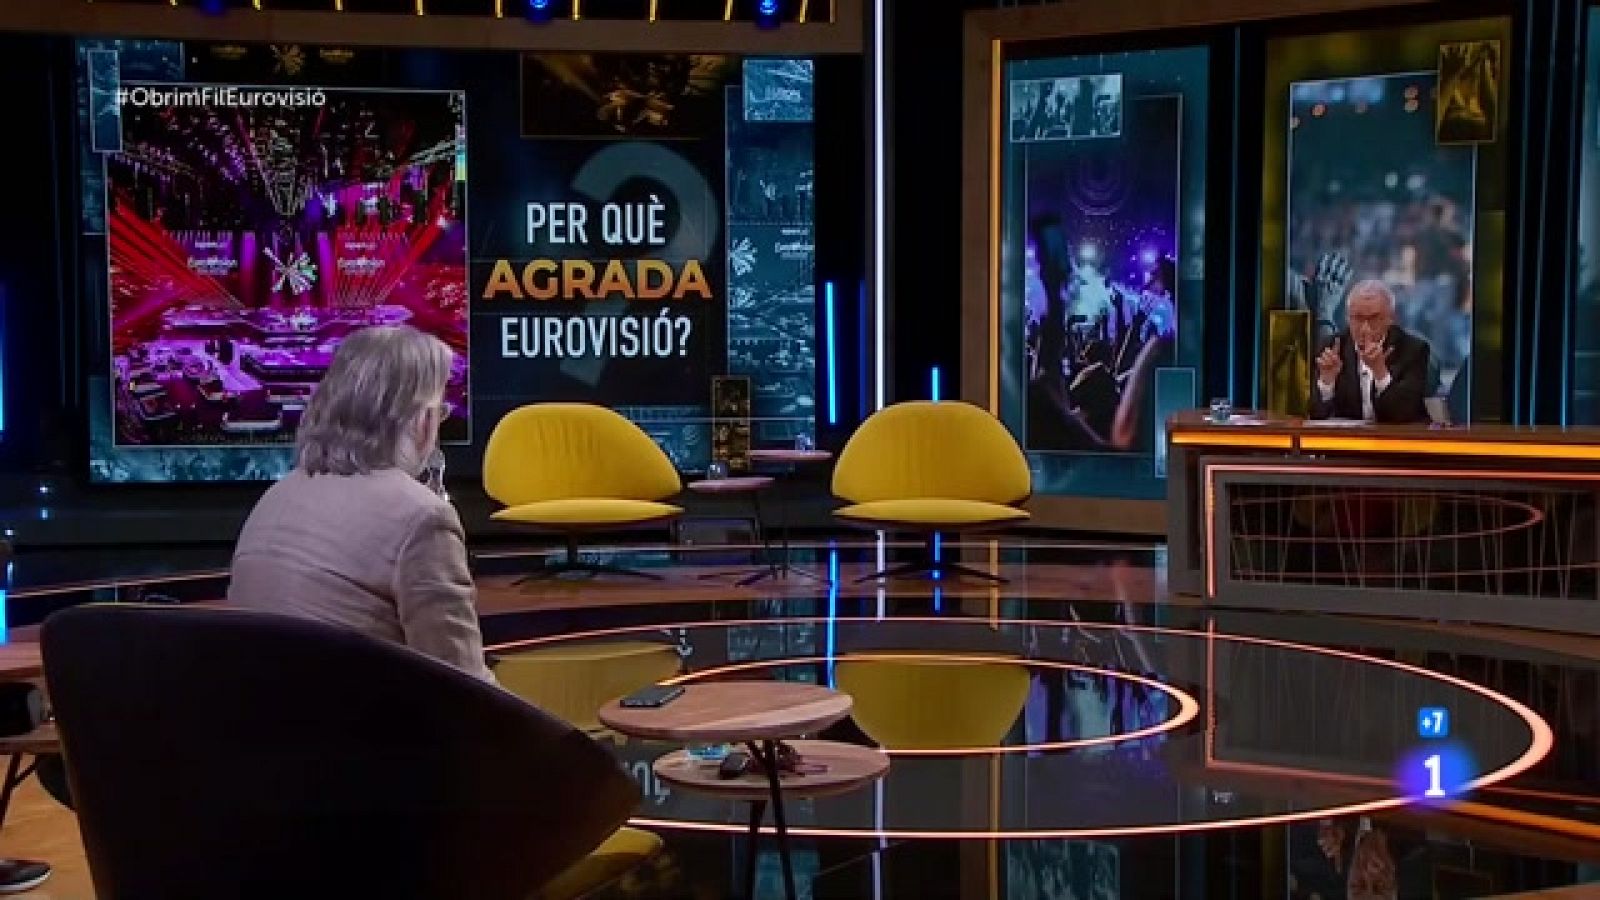 Obrim fil - Per què agrada Eurovisió? - RTVE Catalunya